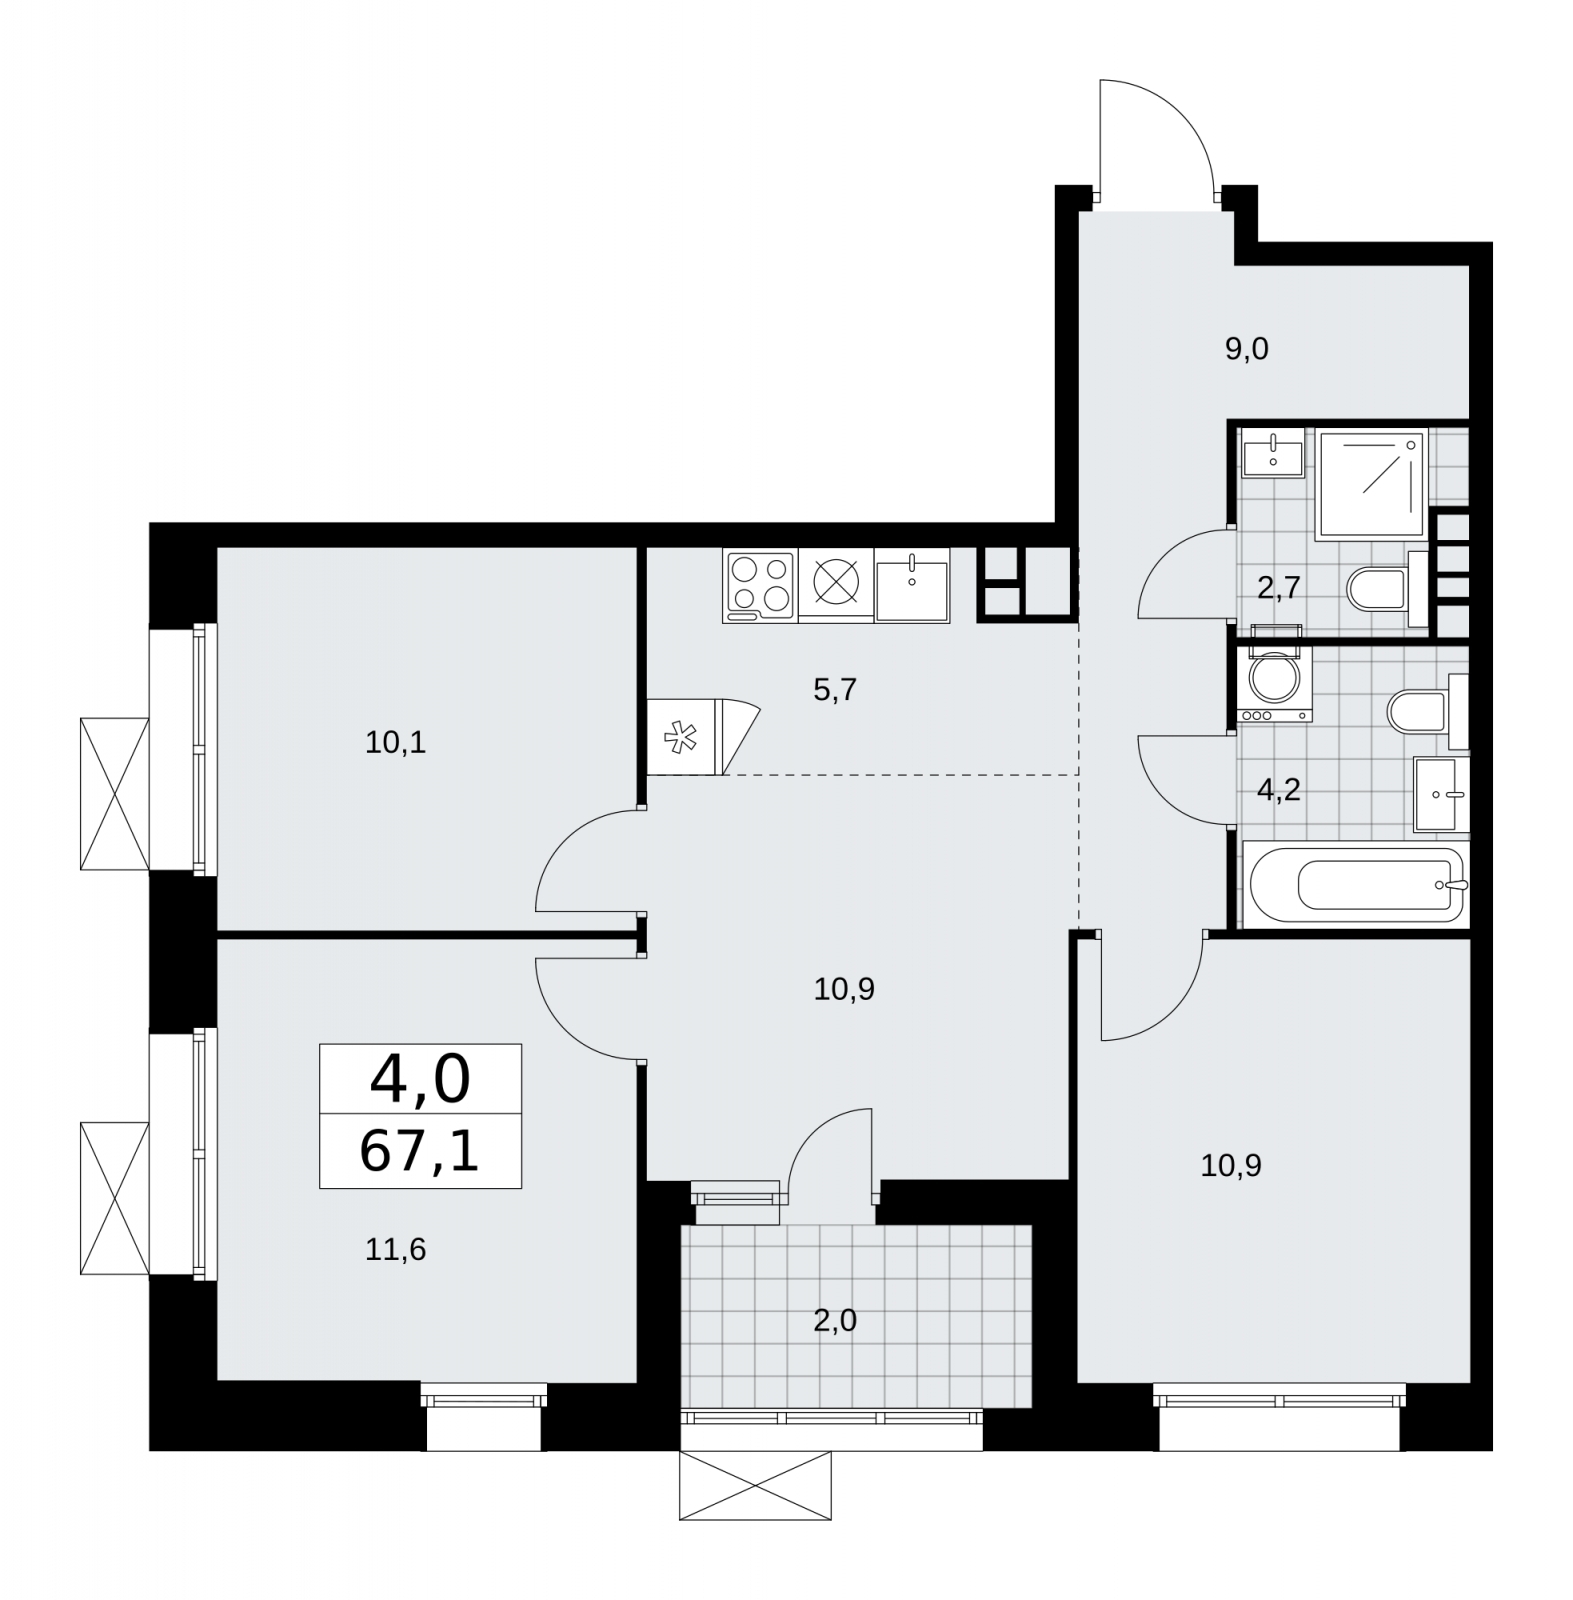 Продается 4-комнатная квартира с европланировкой с отделкой в новом жилом комплексе, недалеко от метро